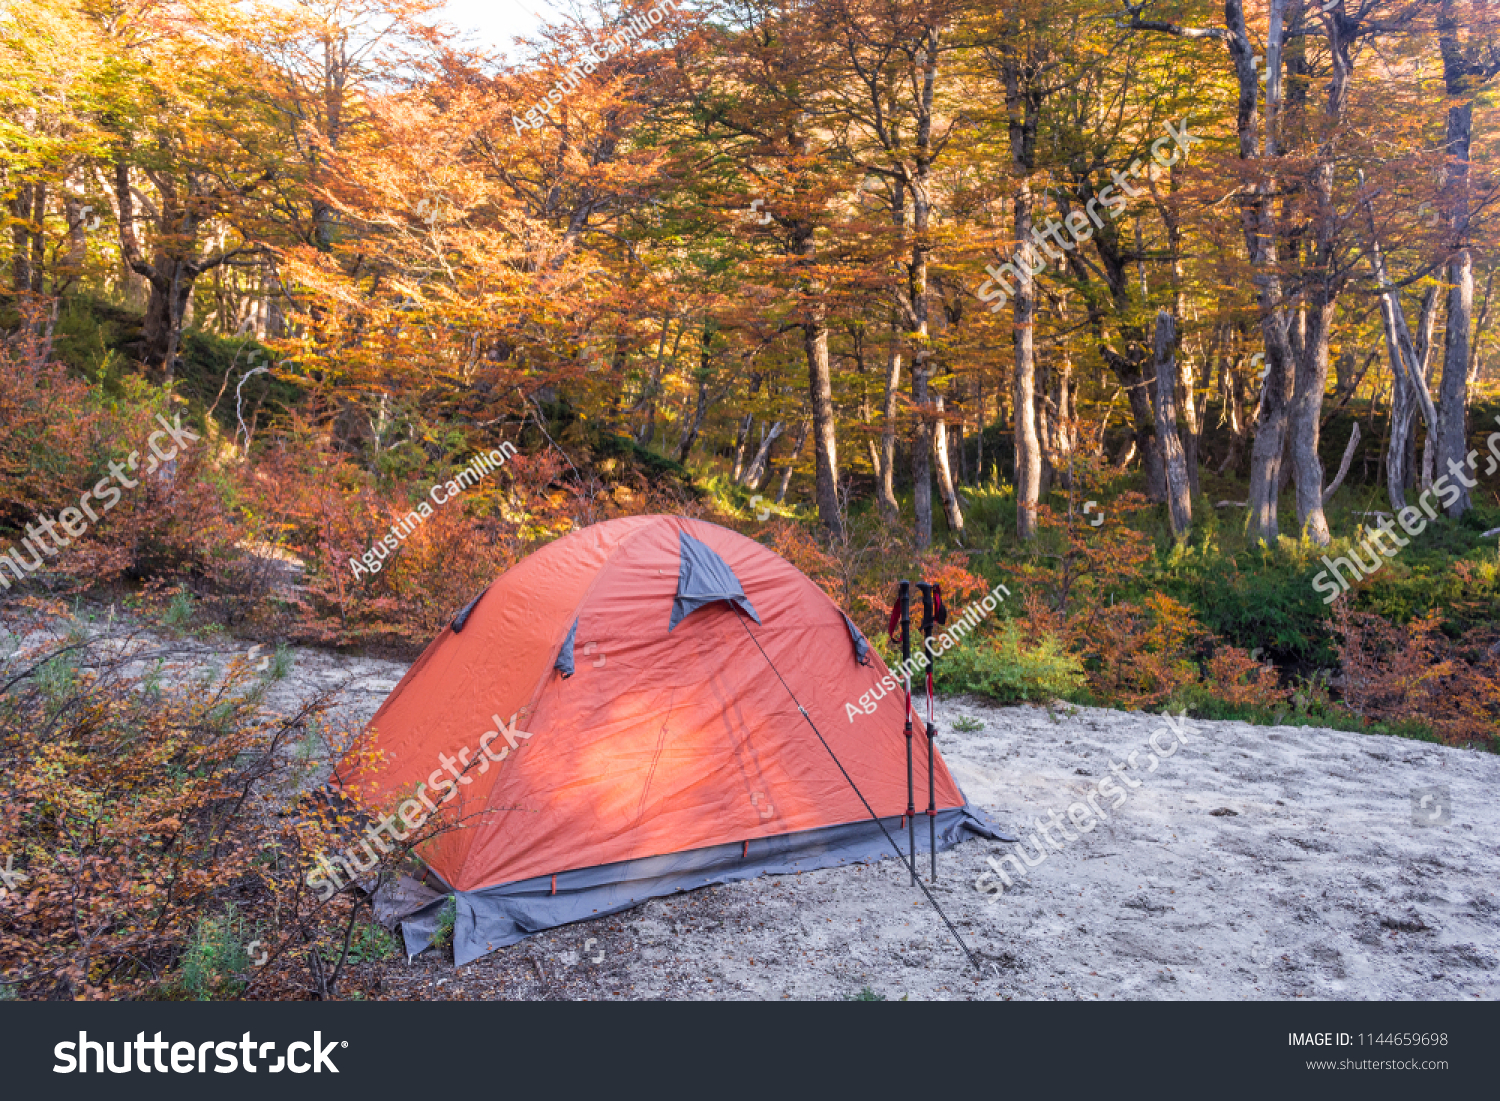 camping and trekking equipment